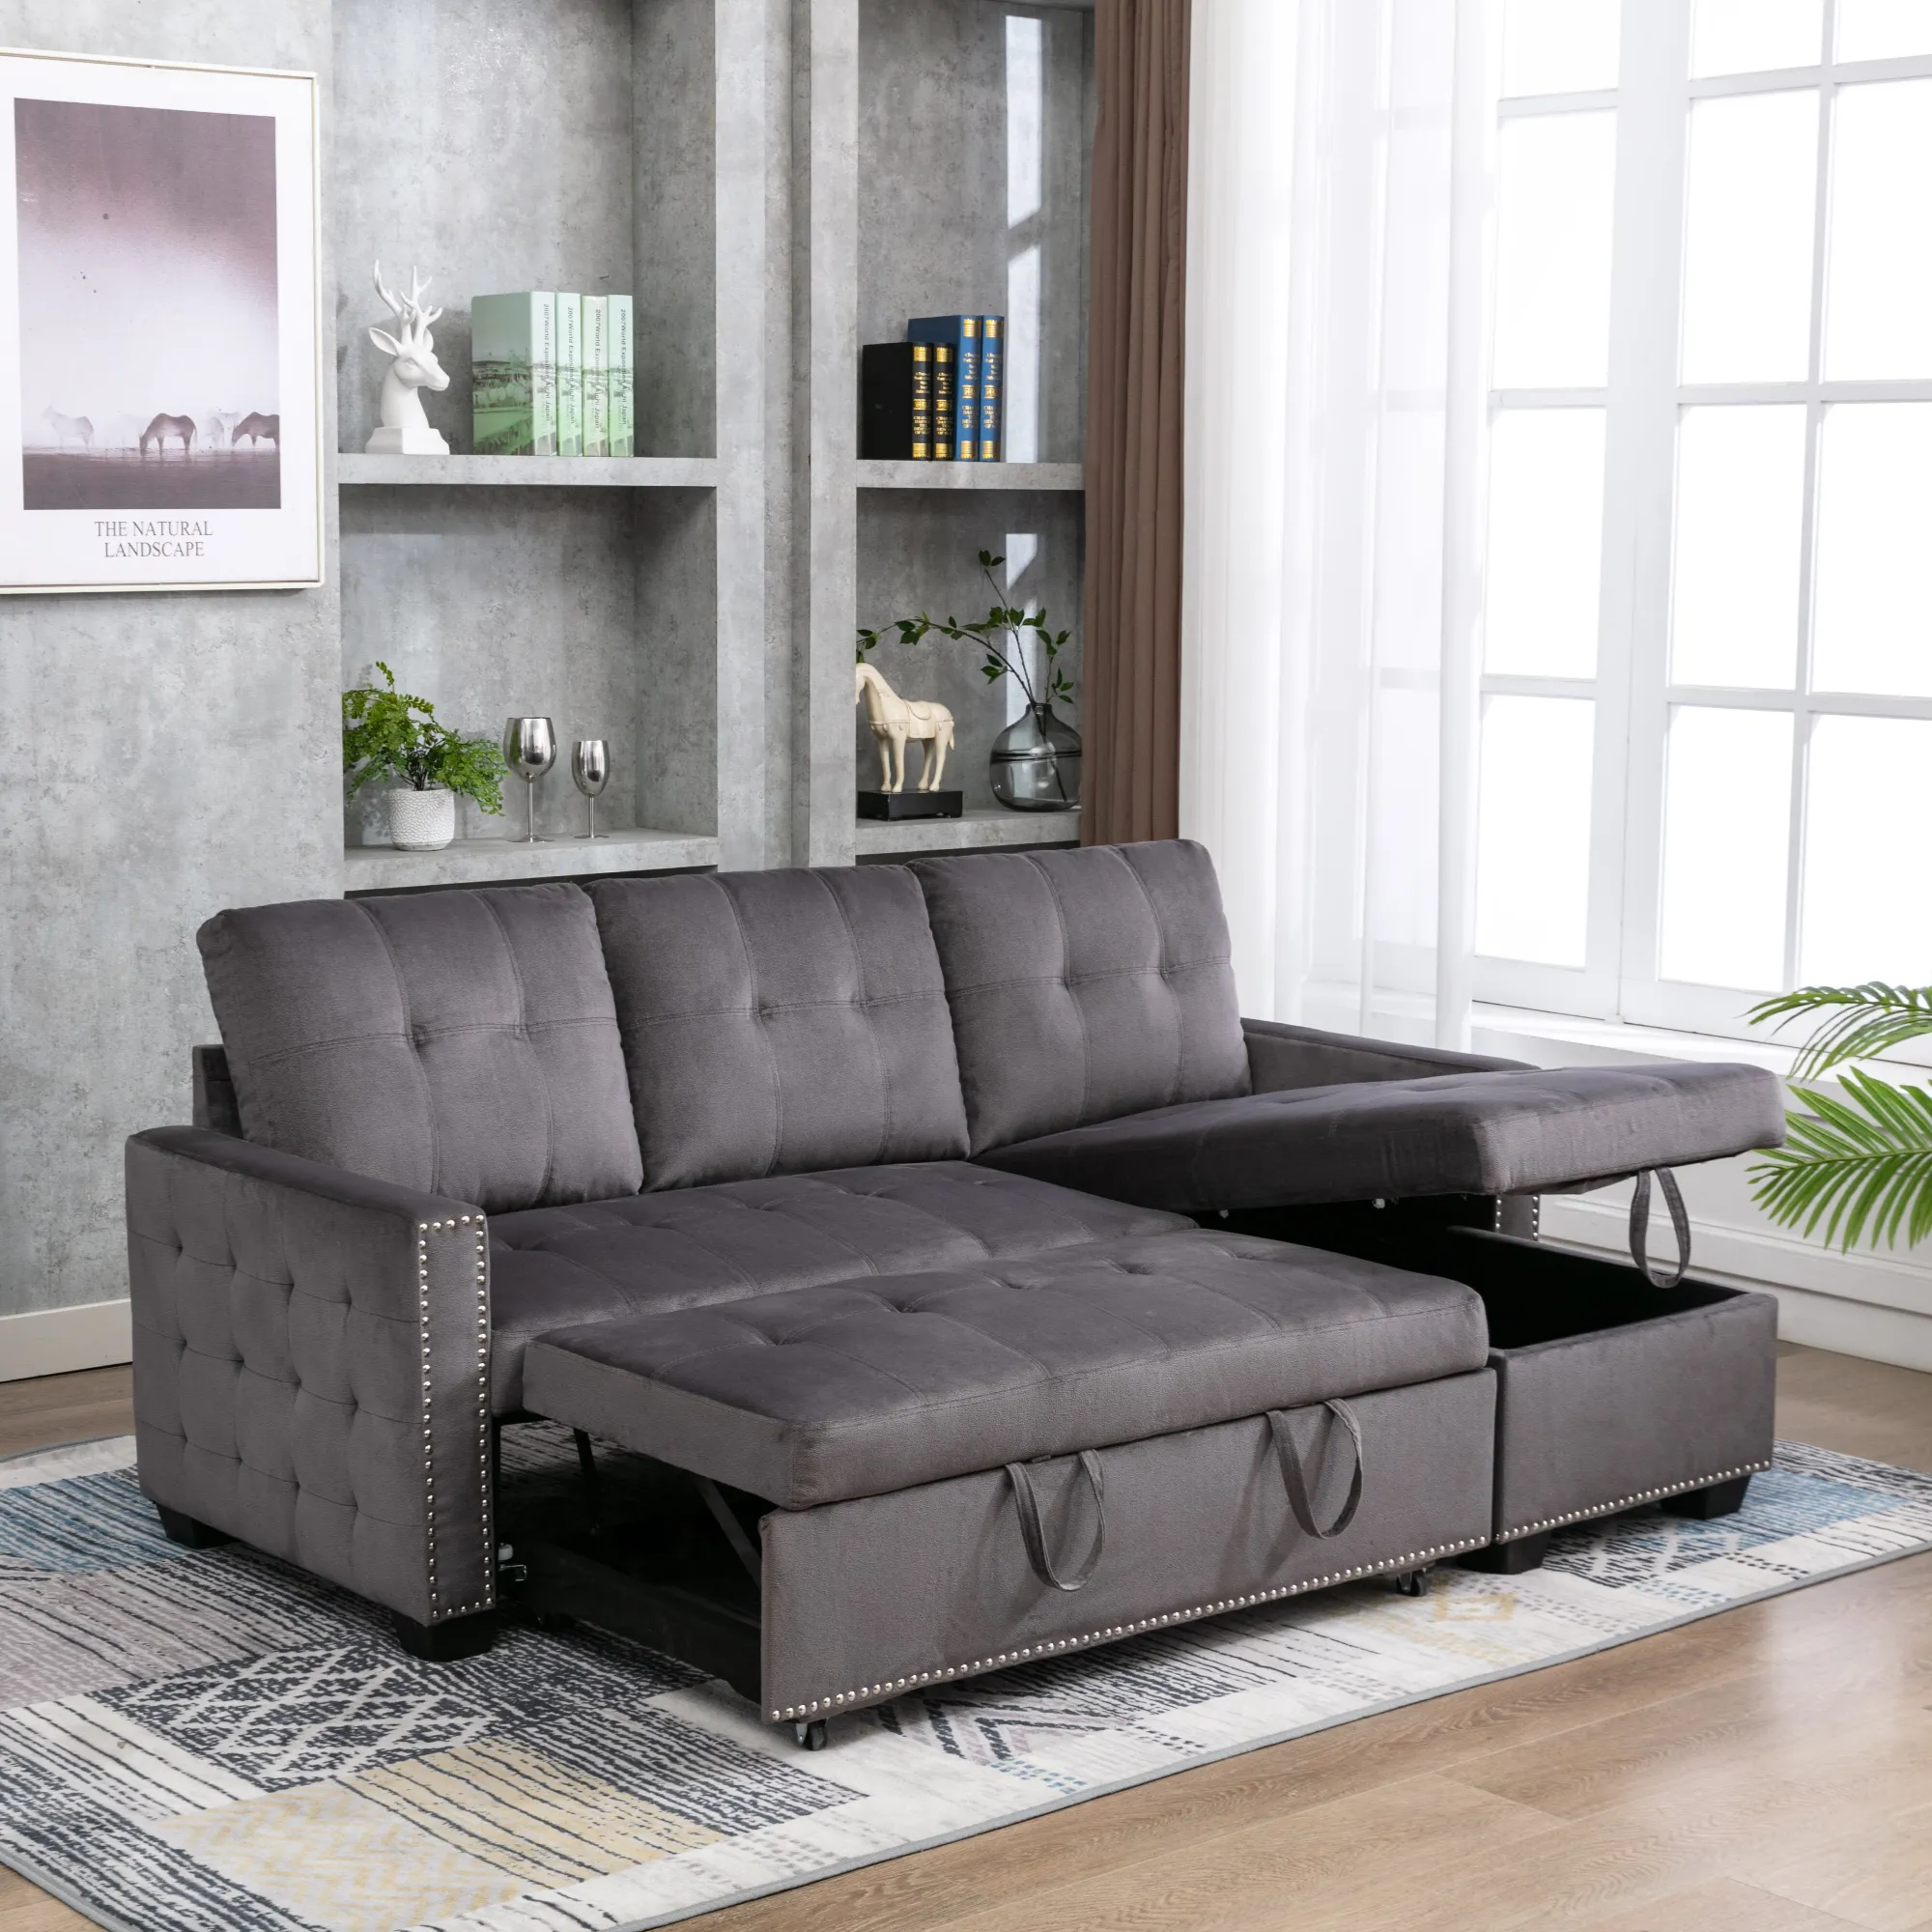 Set Furnitur Ruang Tamu, Furnitur Sofa Desain Modern Furnitur Furnitur Furnitur Furnitur Furnitur Furnitur Furnitur Sofa Menarik Keluar